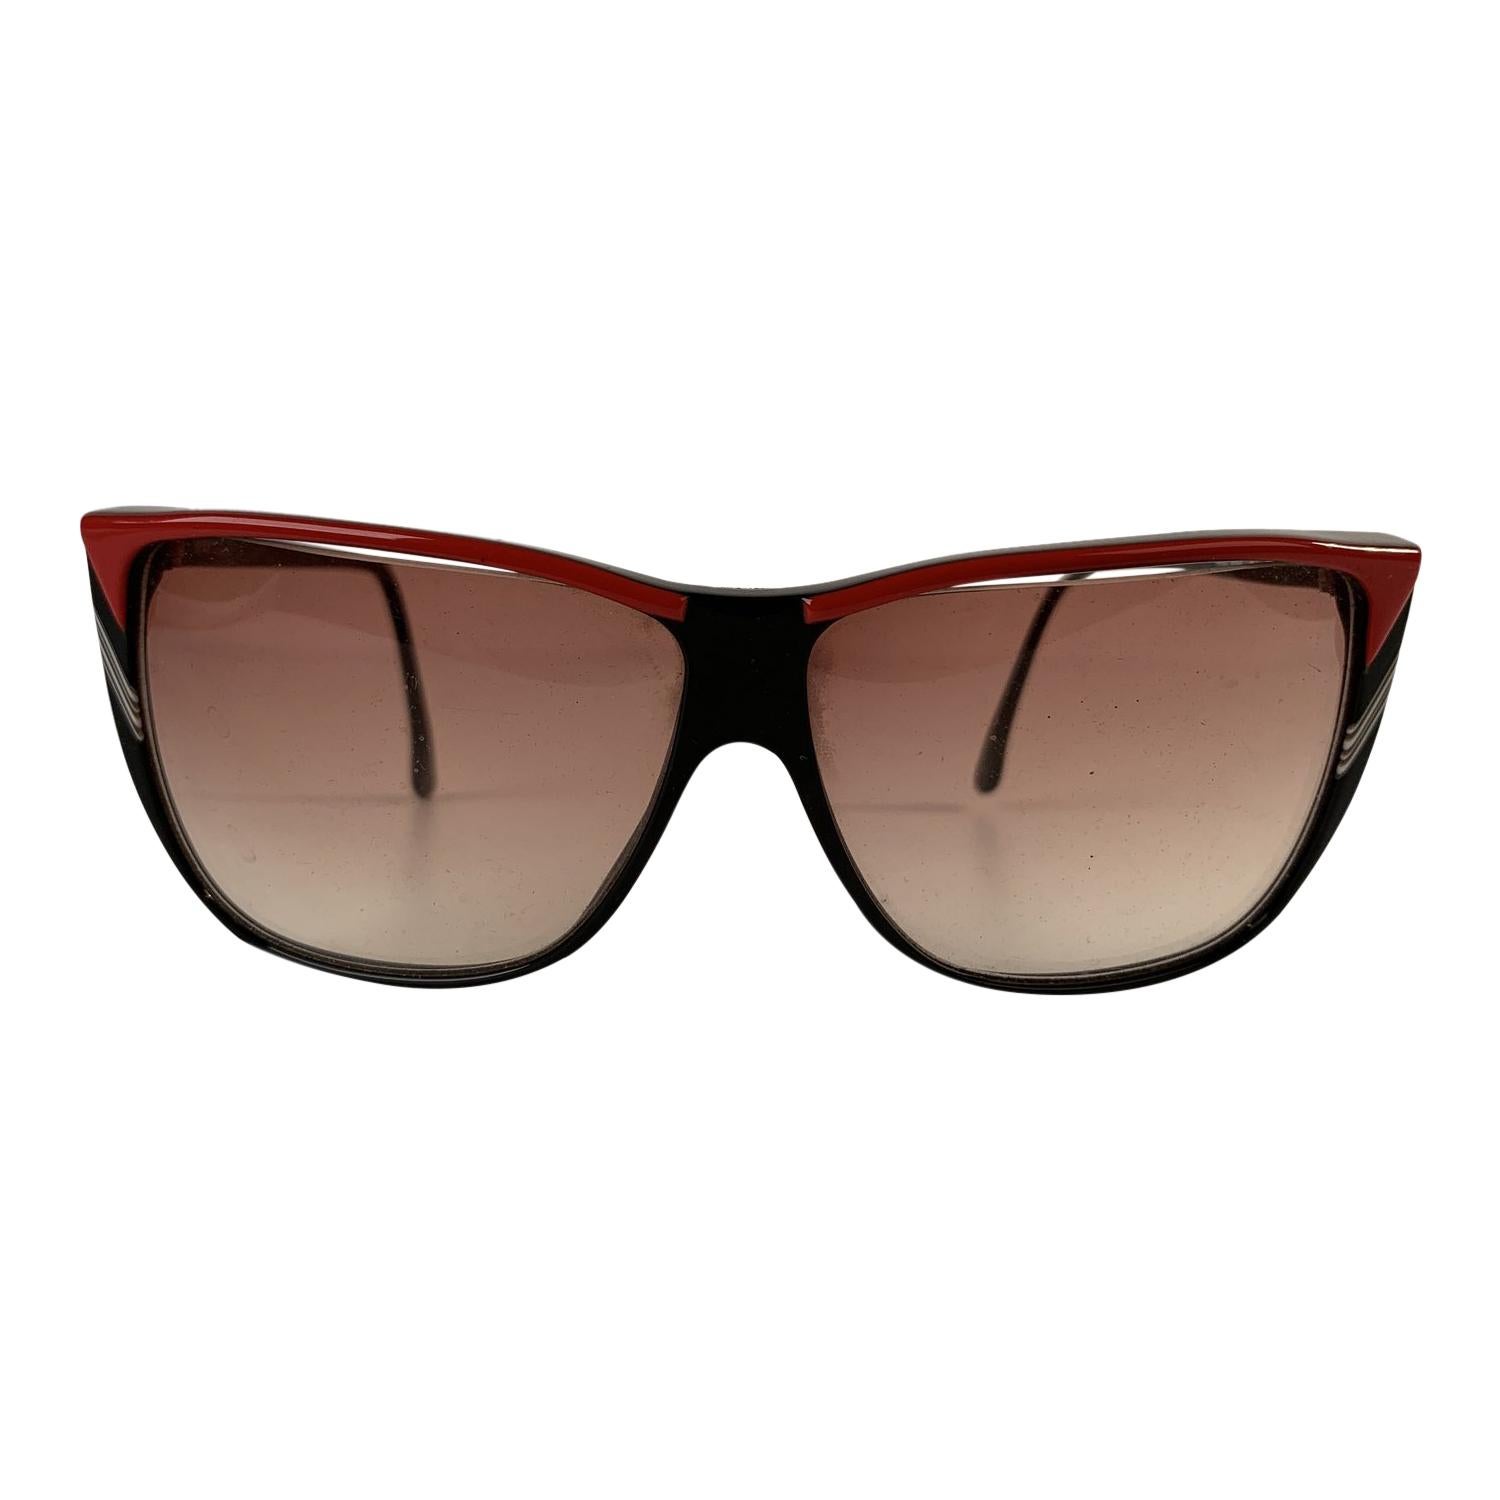 Roberta di Camerino Vintage Black Red Square Sunglasses R56 For Sale